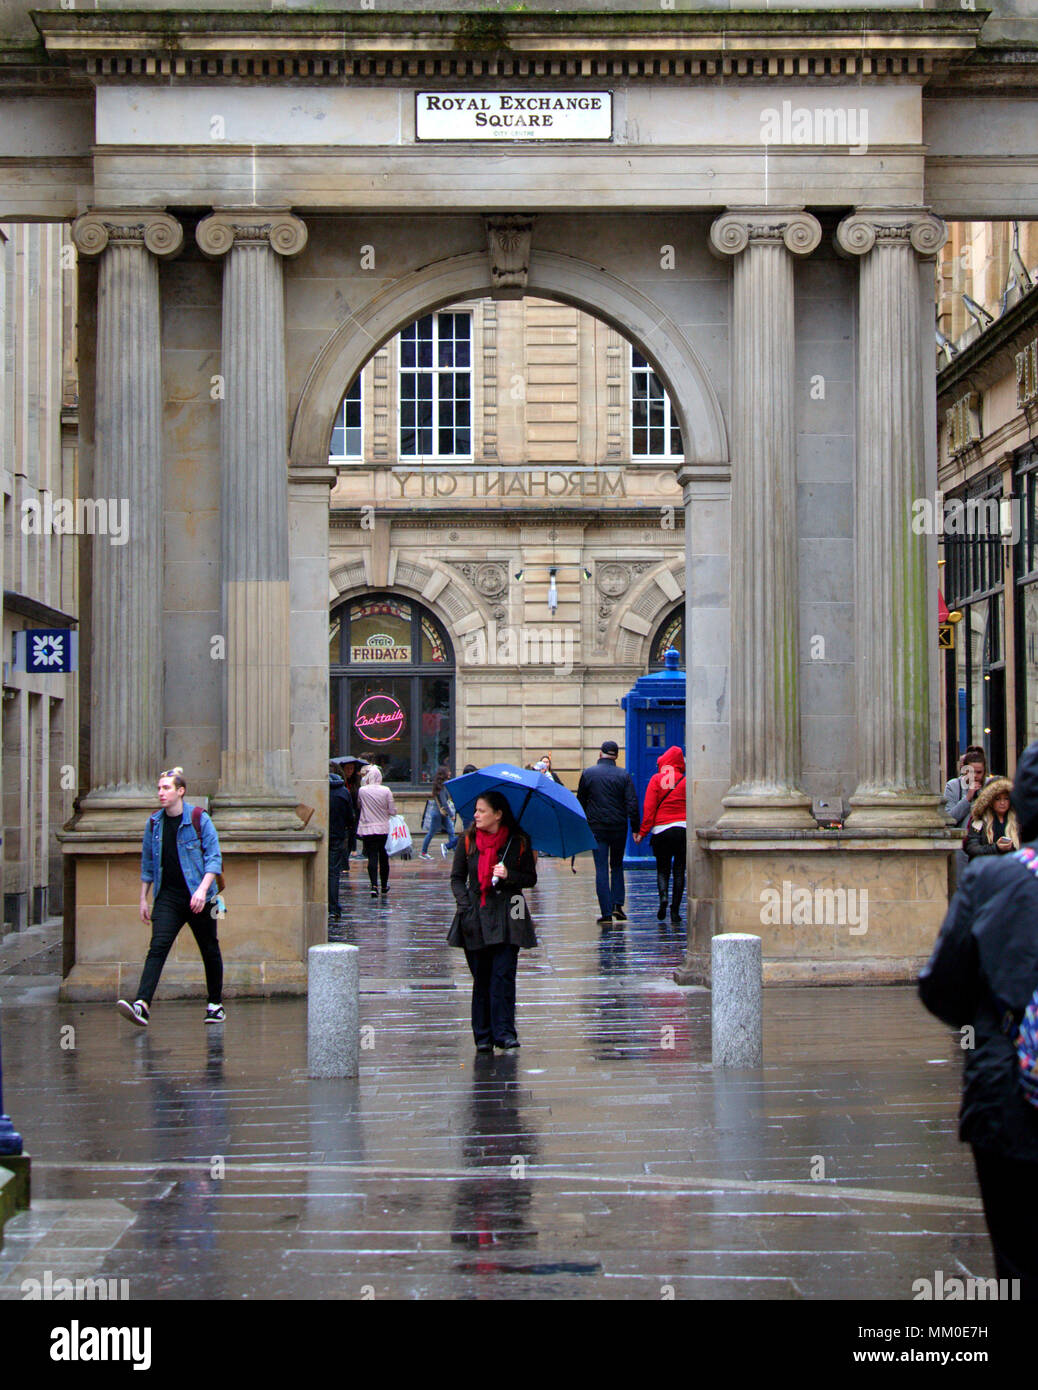 Glasgow, Schottland, Großbritannien 9. Mai. UK Wetter Regen Regen blau Regenschirm der Bogen von Royal Exchange Square im Herzen der Stadt bietet wenig für den Touristen so stumpf nasses Wetter zieht nach dem heißen Bank Urlaub.. Gerard Fähre / alamy Nachrichten Stockfoto